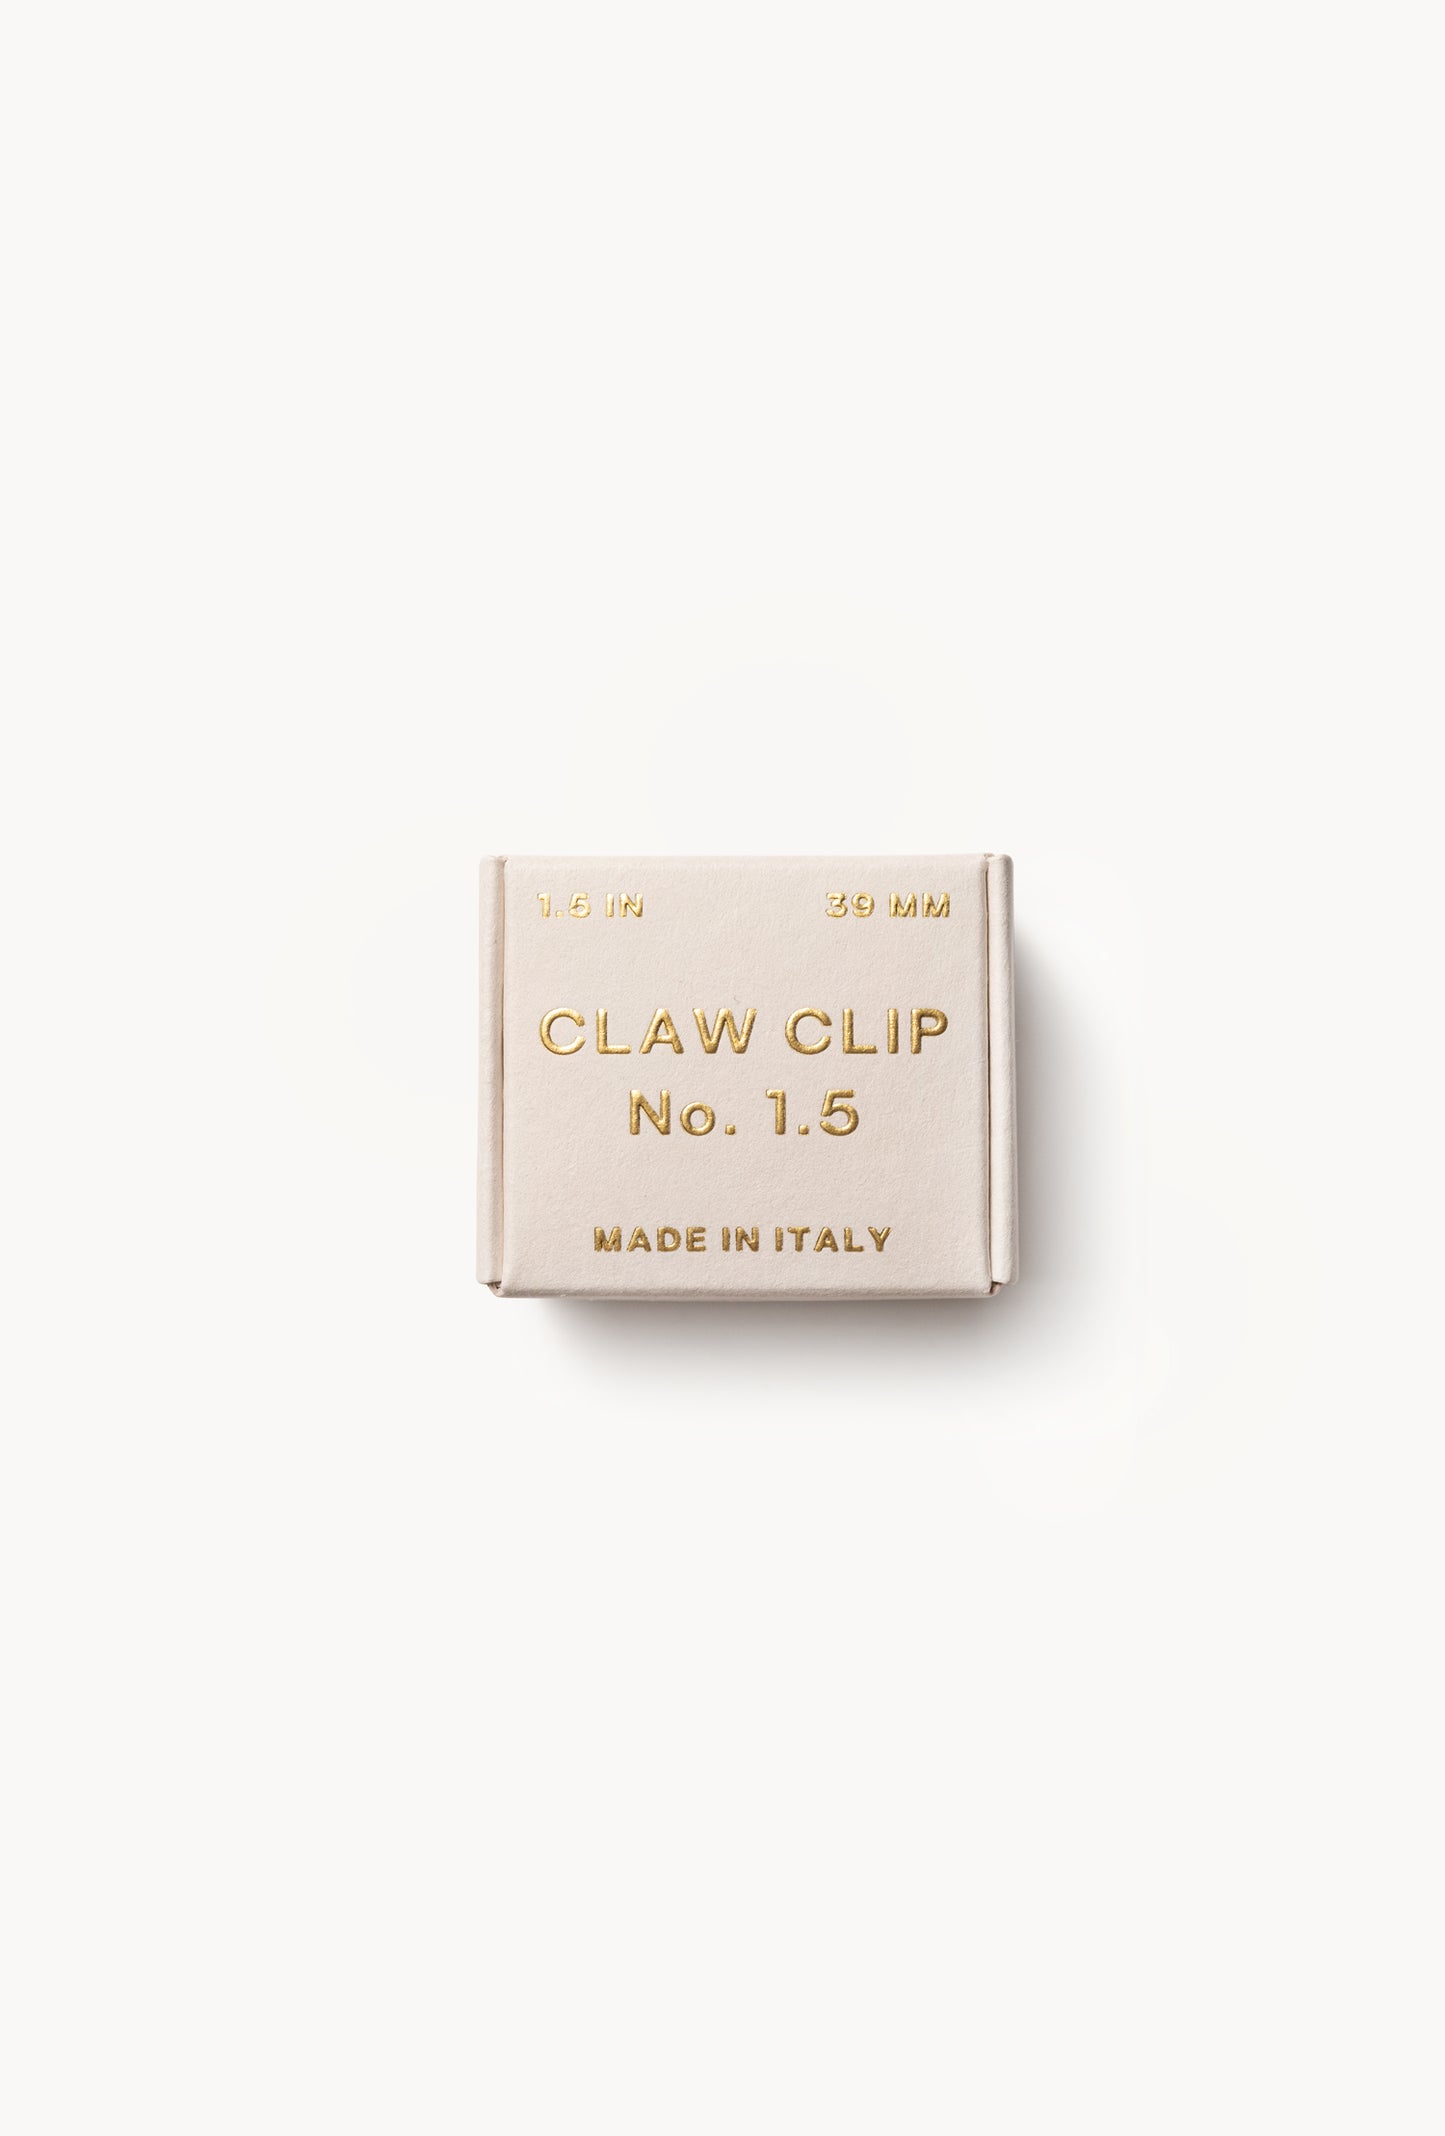 No. 1.5 Claw Clip